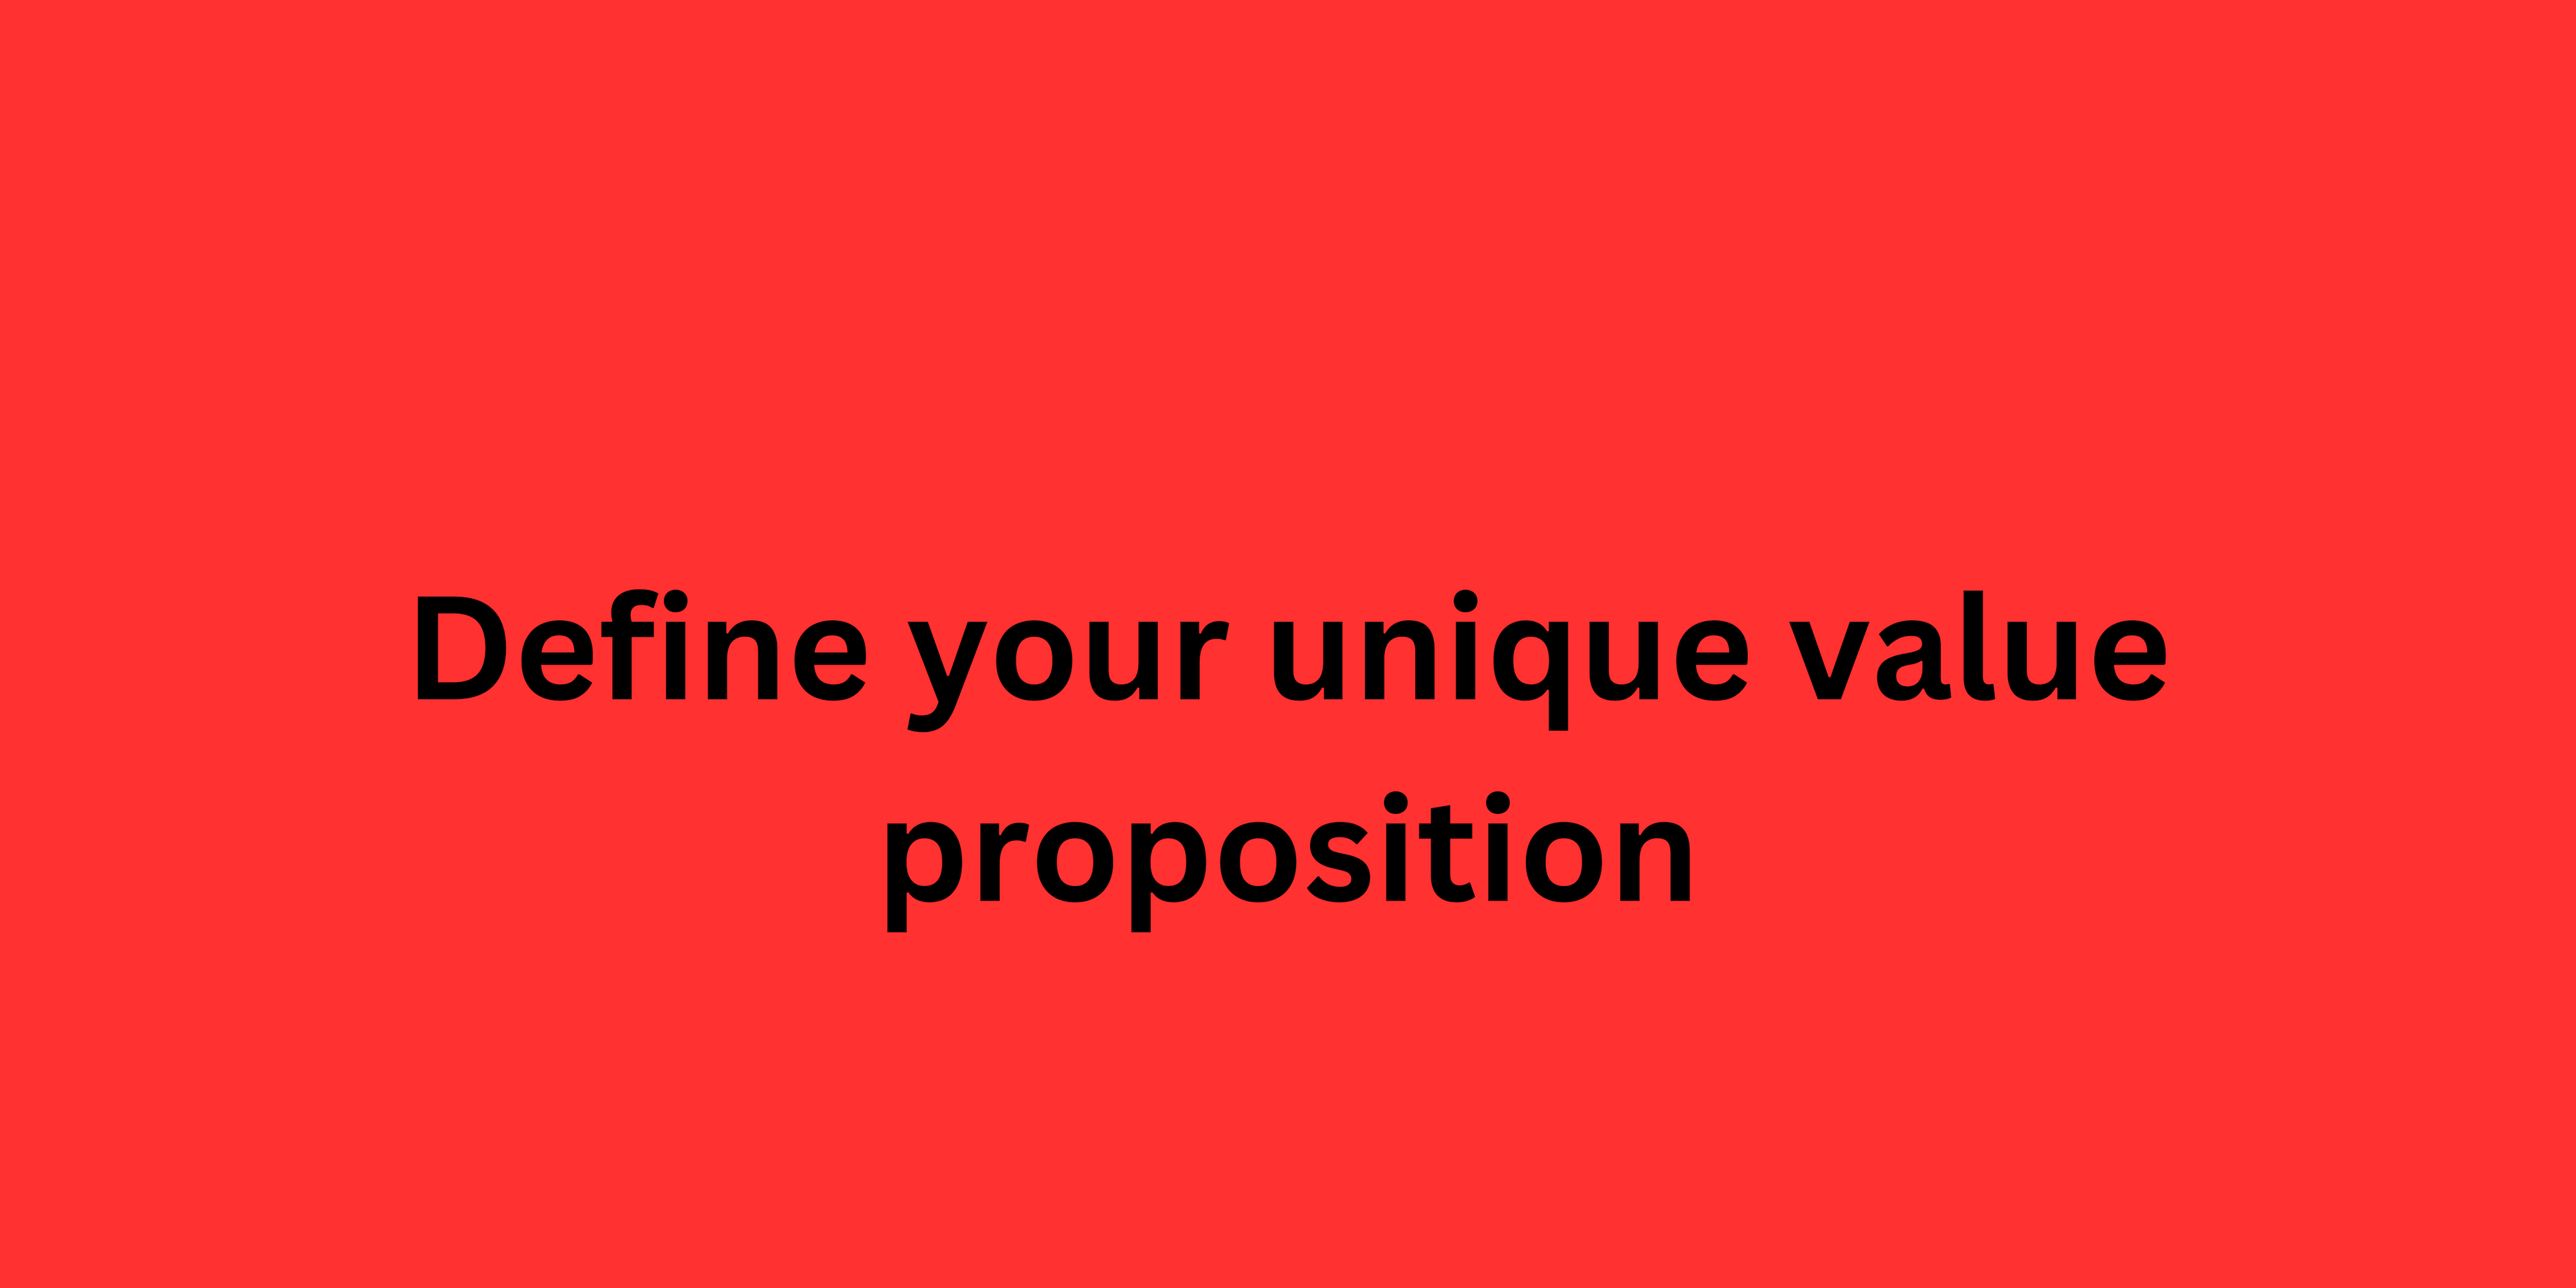 Define your unique value proposition